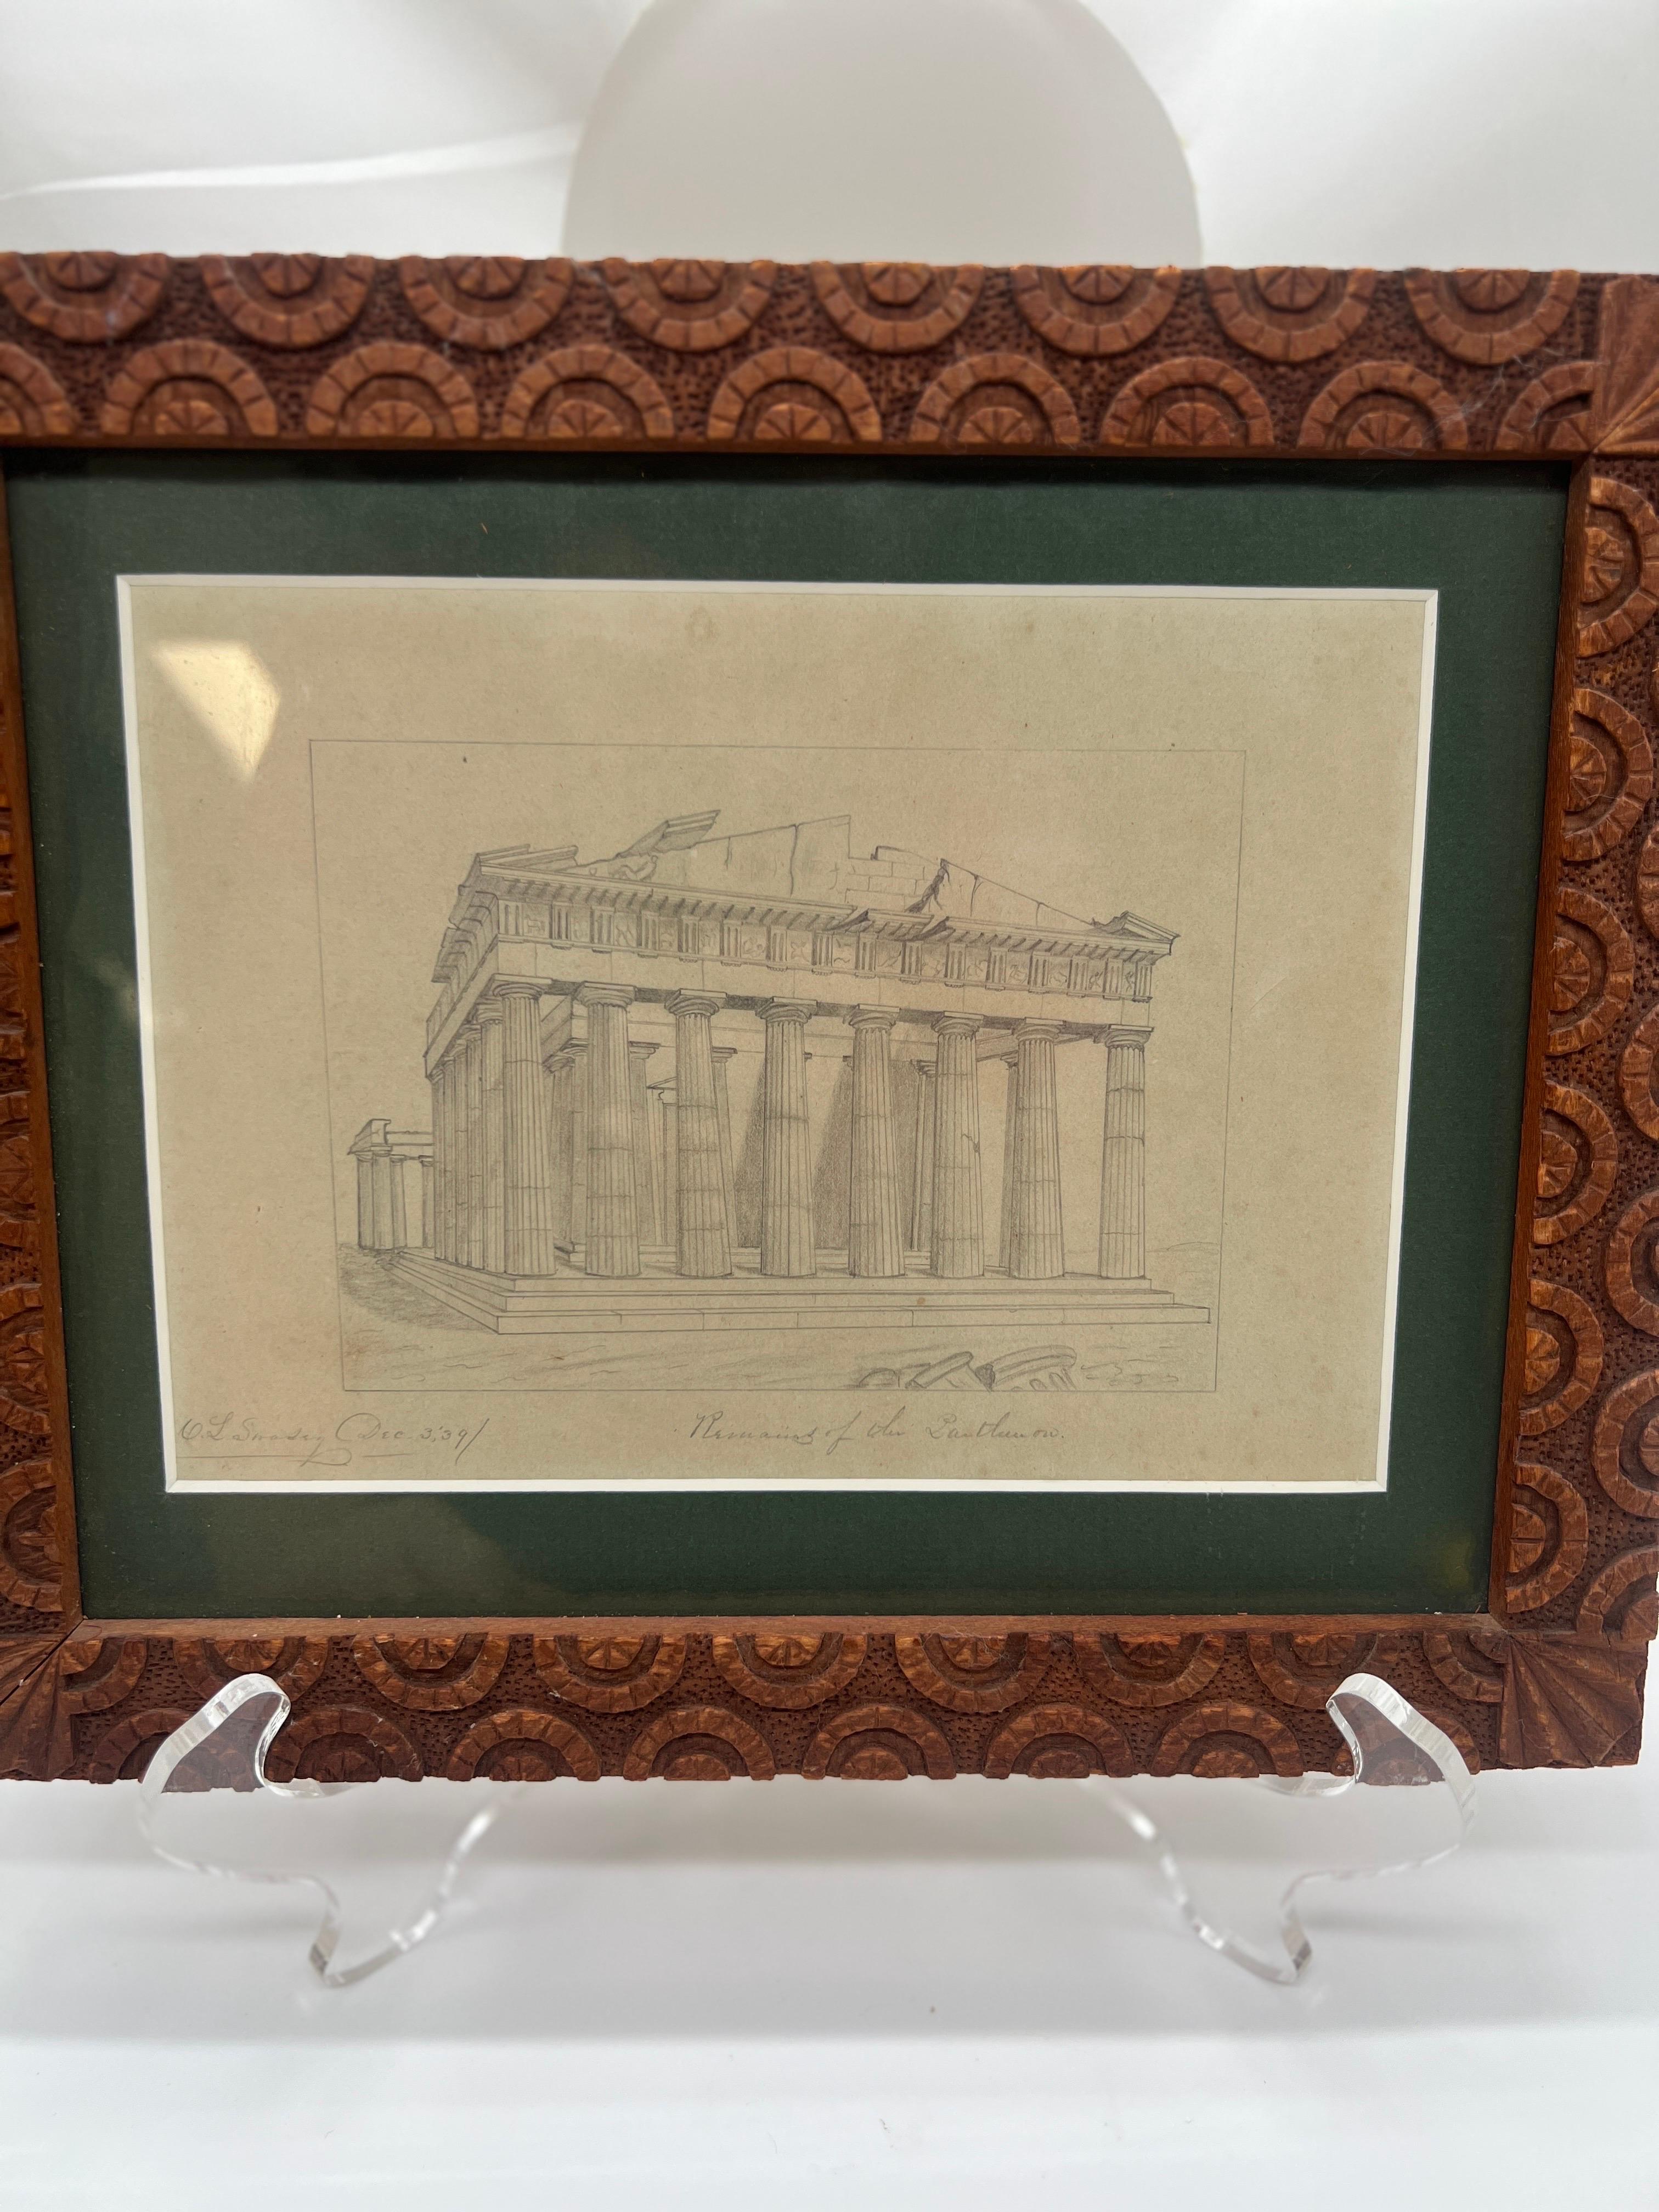 Charles Lamson Swasey (américain, New Bedford Massachusetts, 1815-1888). 

Ce magnifique dessin au graphite sur papier a été réalisé en décembre 1839 et représente les vestiges du Grand Parthénon en Grèce. 

Cette pièce est placée dans un cadre en